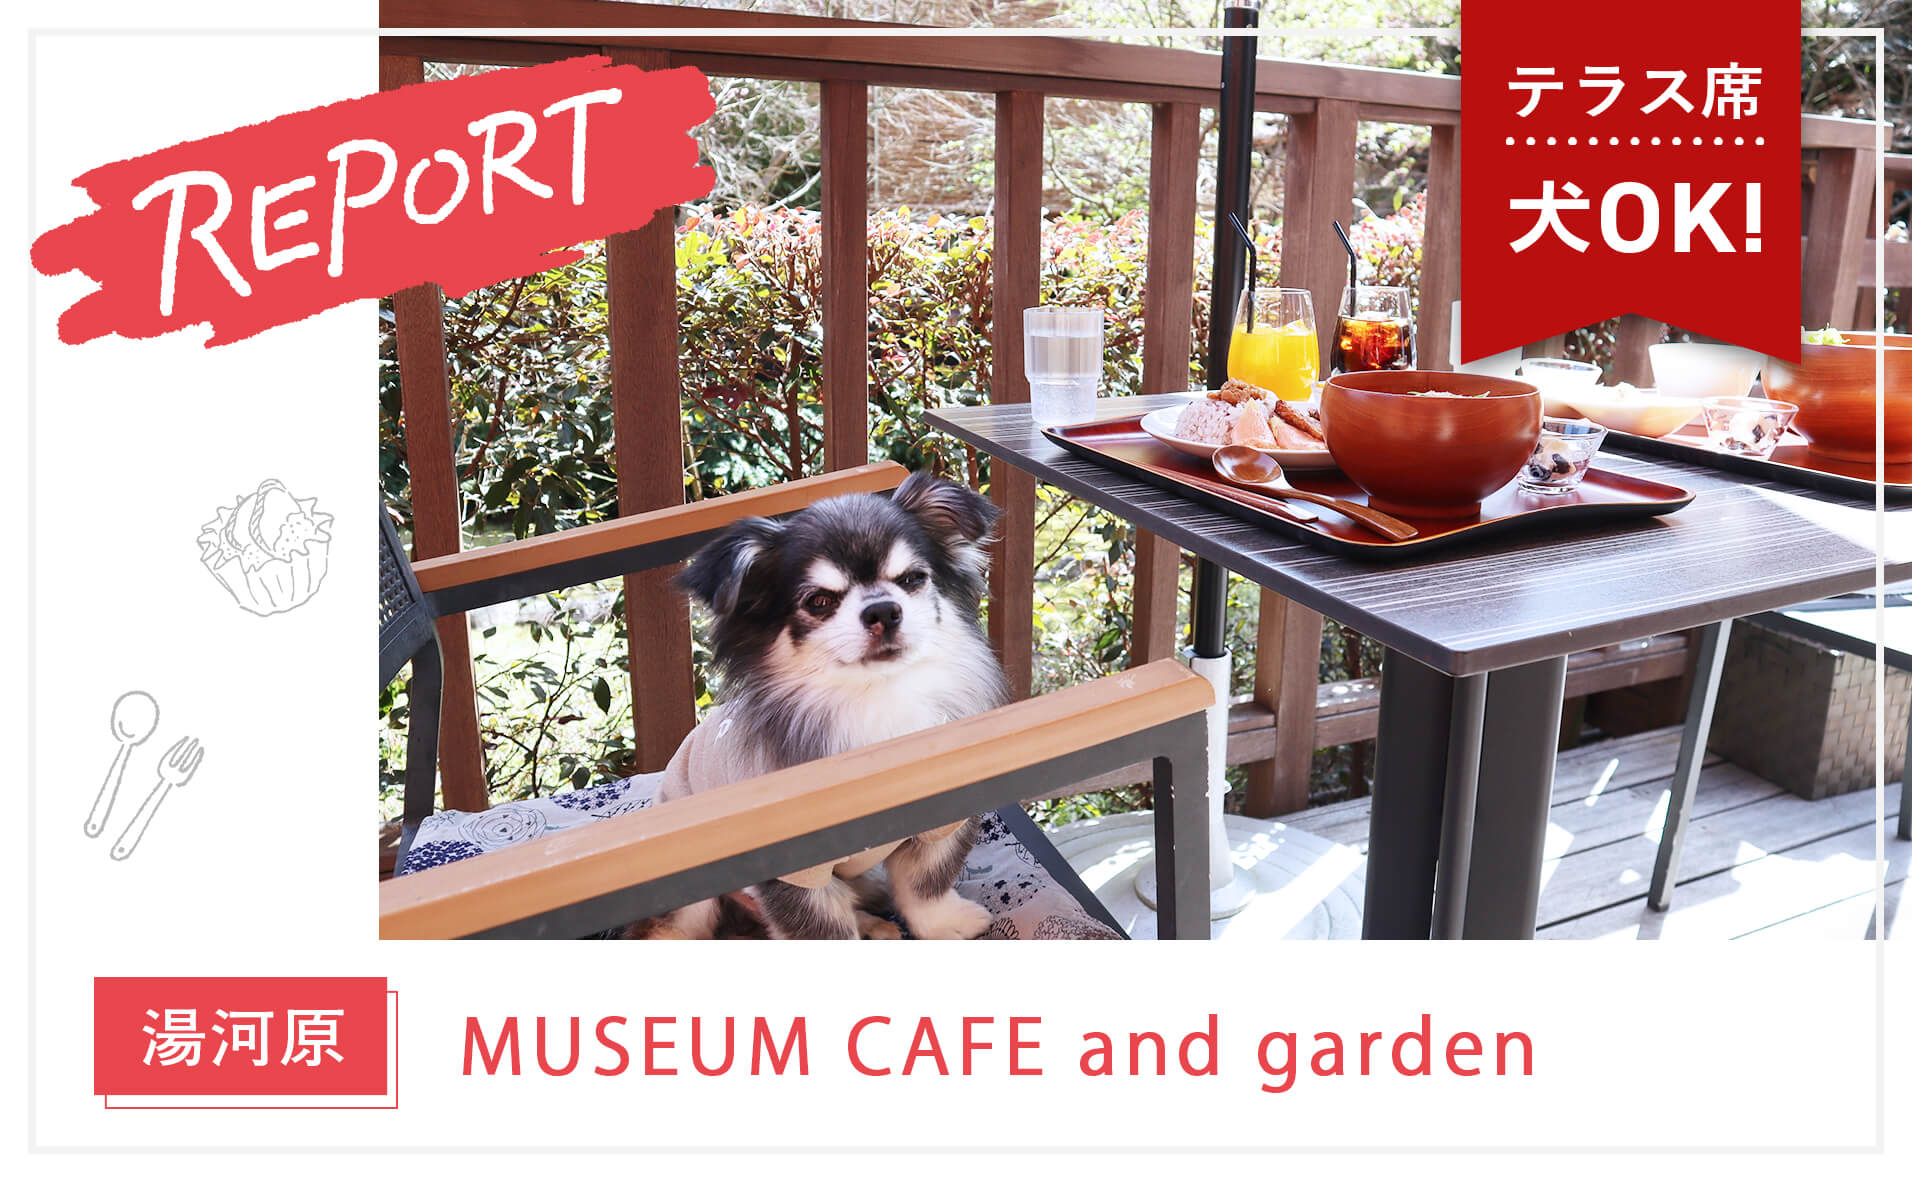 【湯河原】足湯付きの豆腐料理がおいしいカフェ『MUSEUM CAFE and garden』